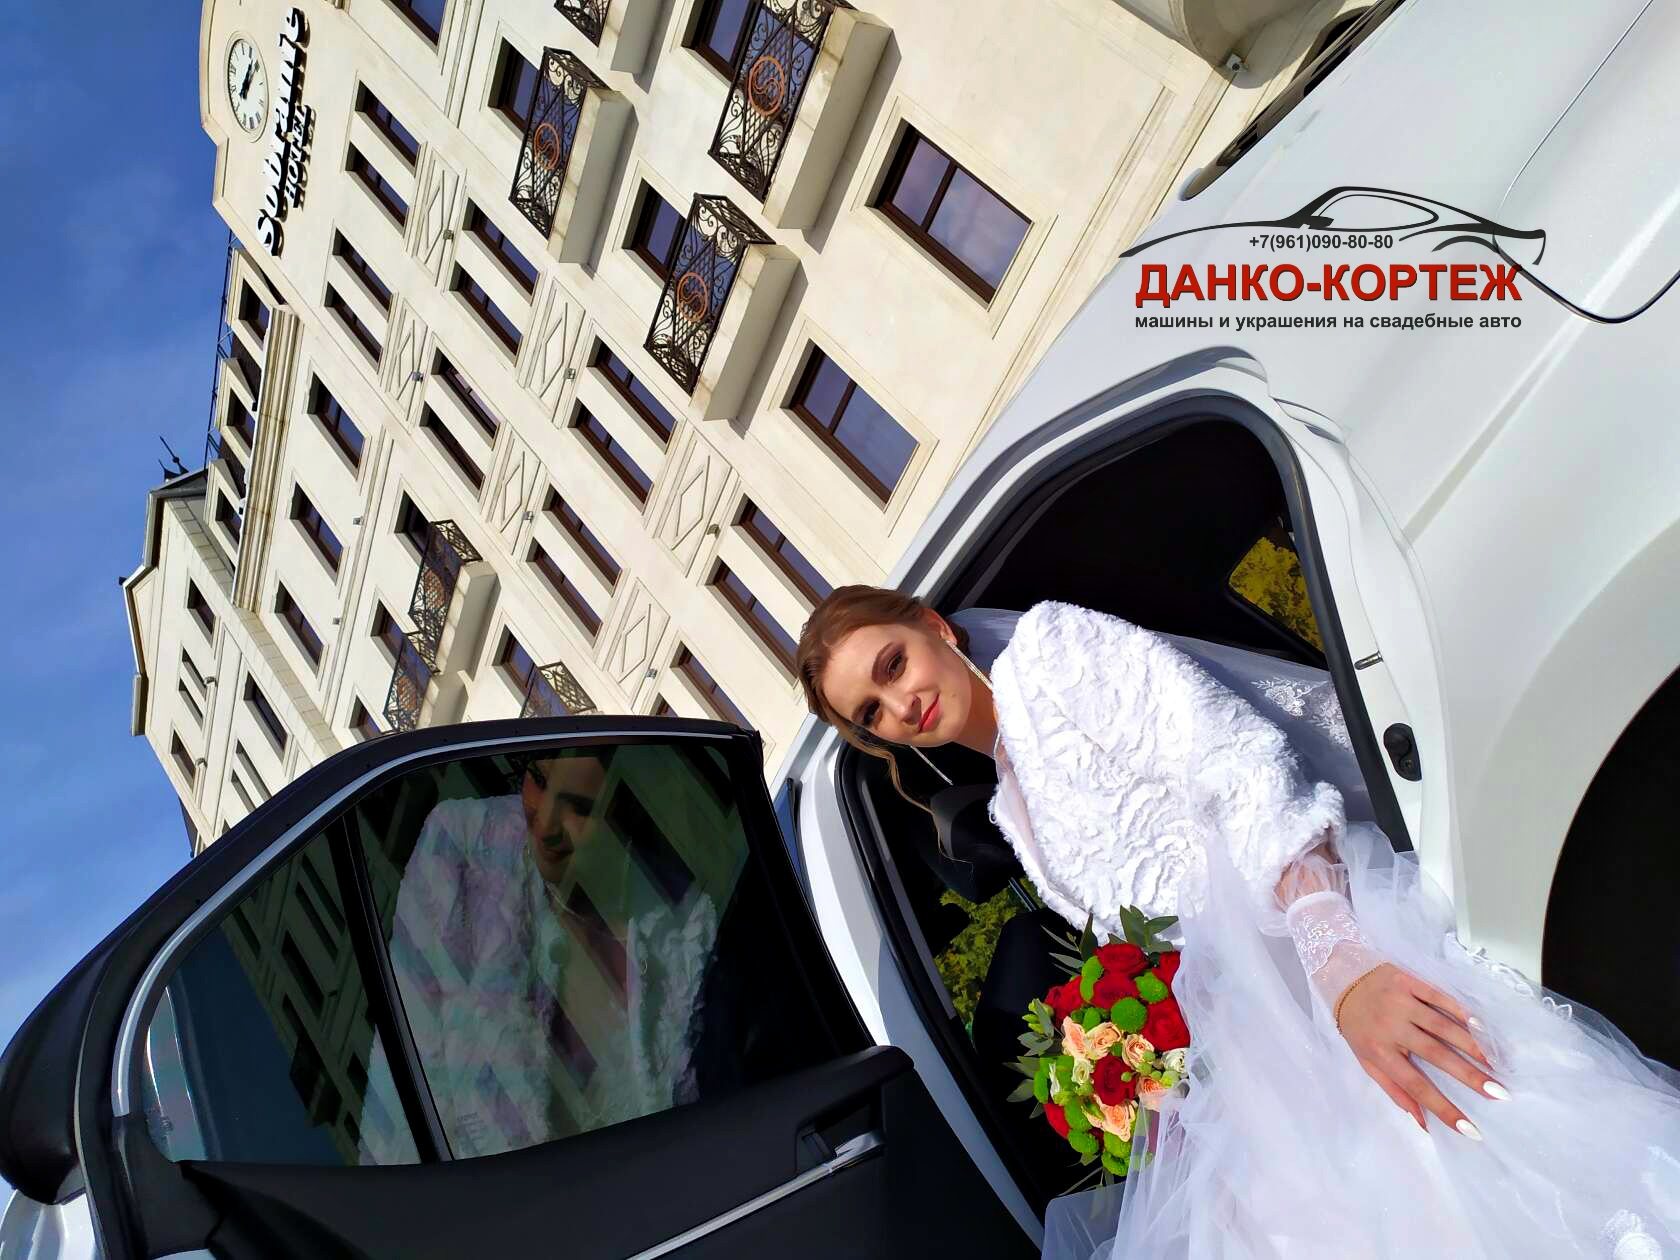 15 февраля 2020 года Данко-кортеж Волгоград и счастливые невесты. Наши клиенты без ума от качественного сервиса, от комфортабельных авто и шикарных свадебных украшений для машин!